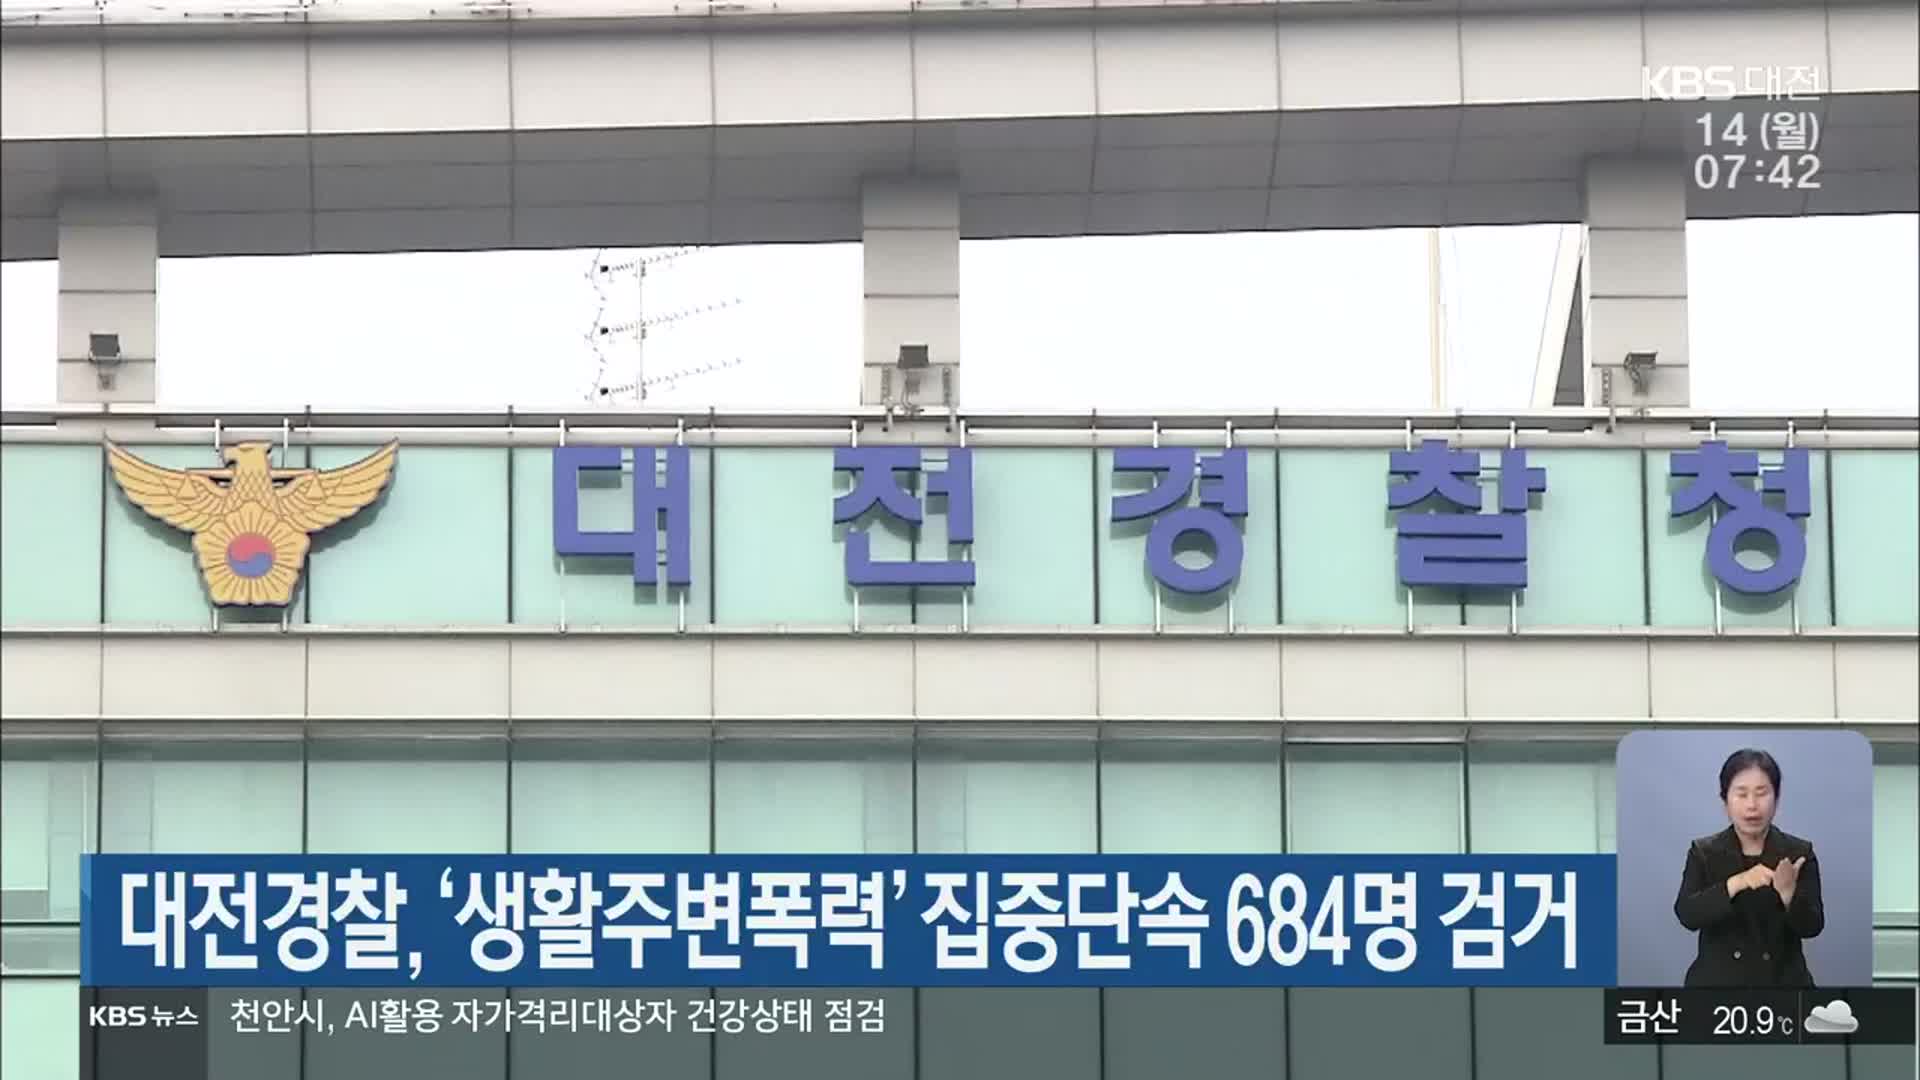 대전경찰, ‘생활주변폭력’ 집중단속 684명 검거